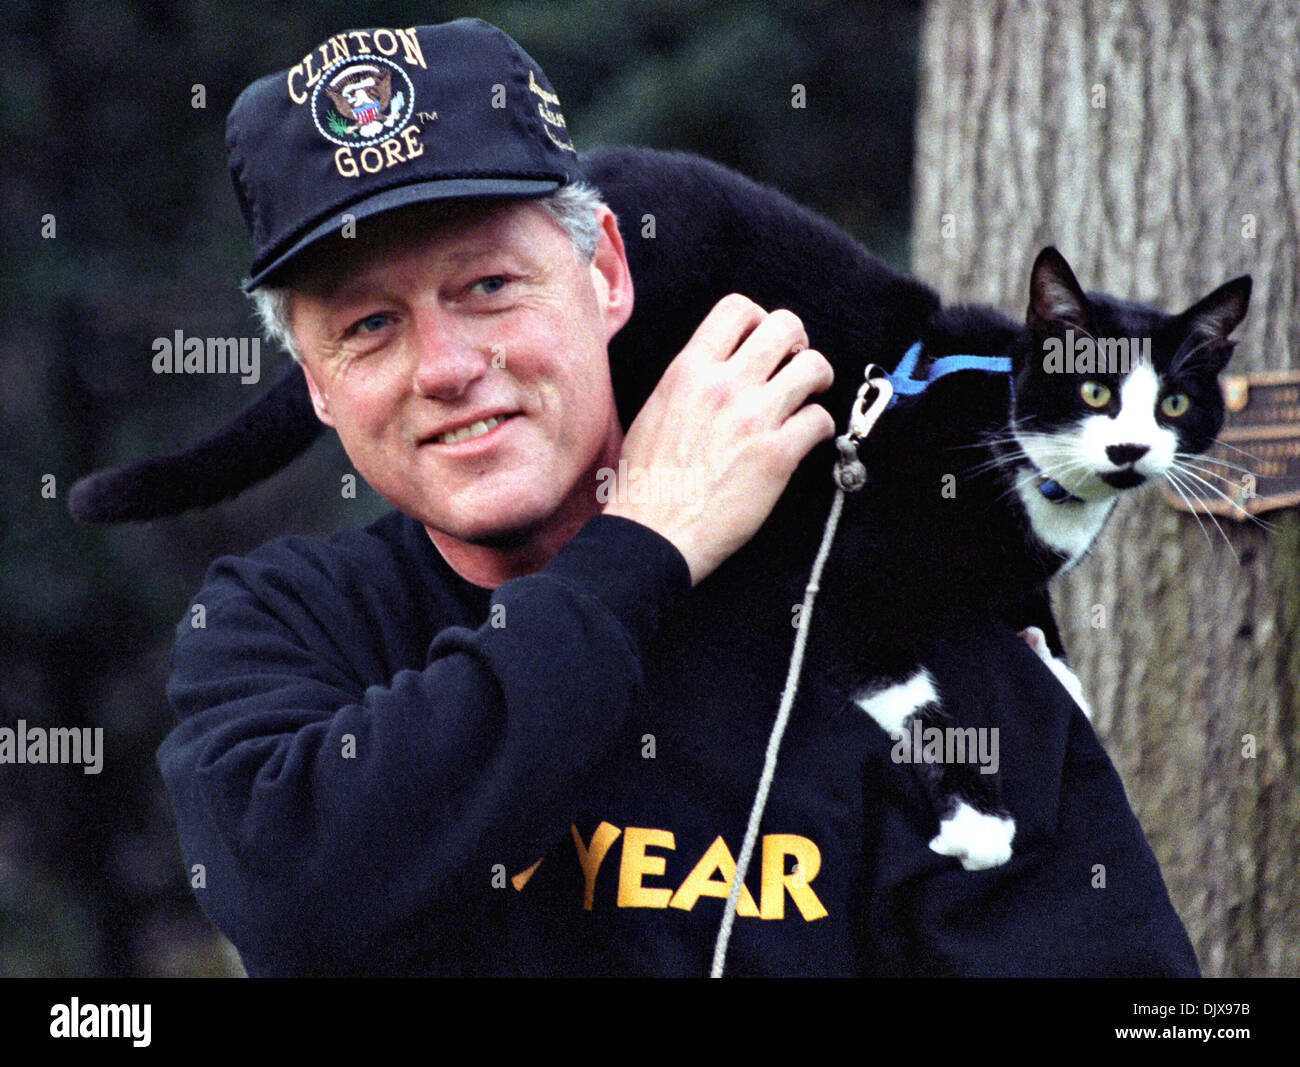 US-Präsident Bill Clinton geht mit seiner Katze Socken auf seiner Schulter auf dem South Lawn des weißen Hauses 20. Dezember 1993 in Washington, DC. Stockfoto